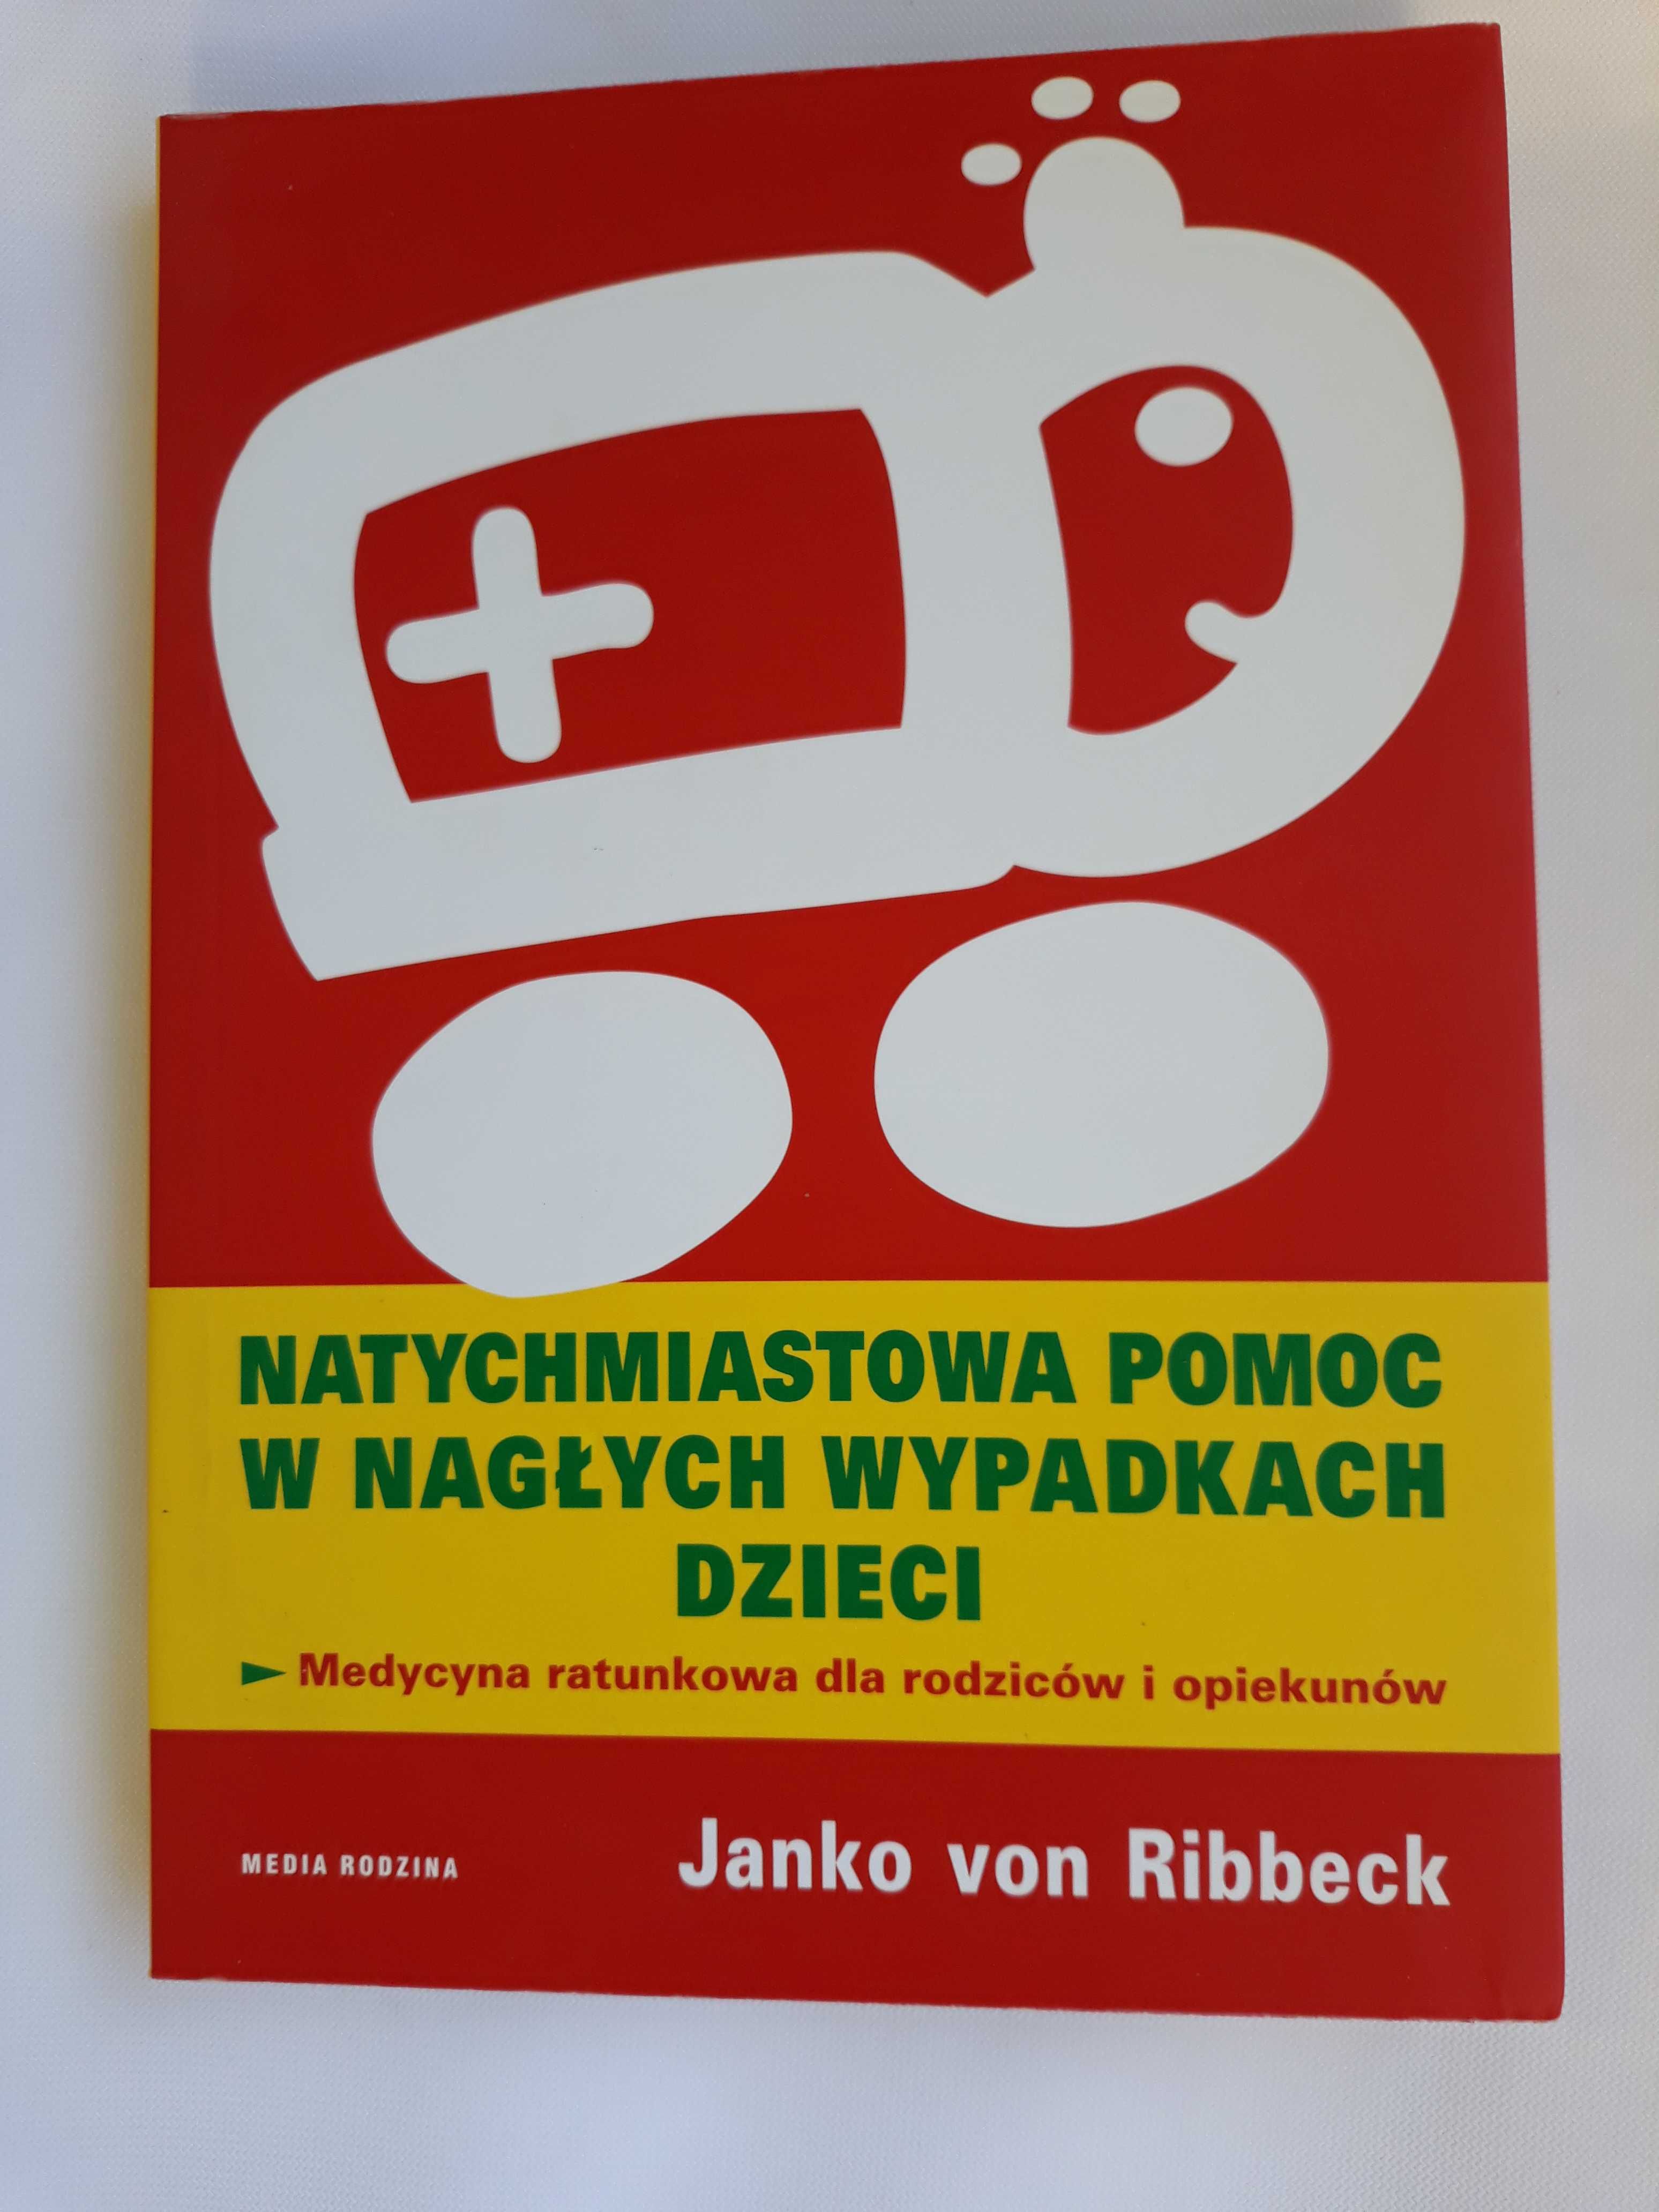 "Natychmiastowa pomoc w nagłych wypadkach dzieci", Janko von Ribbeck